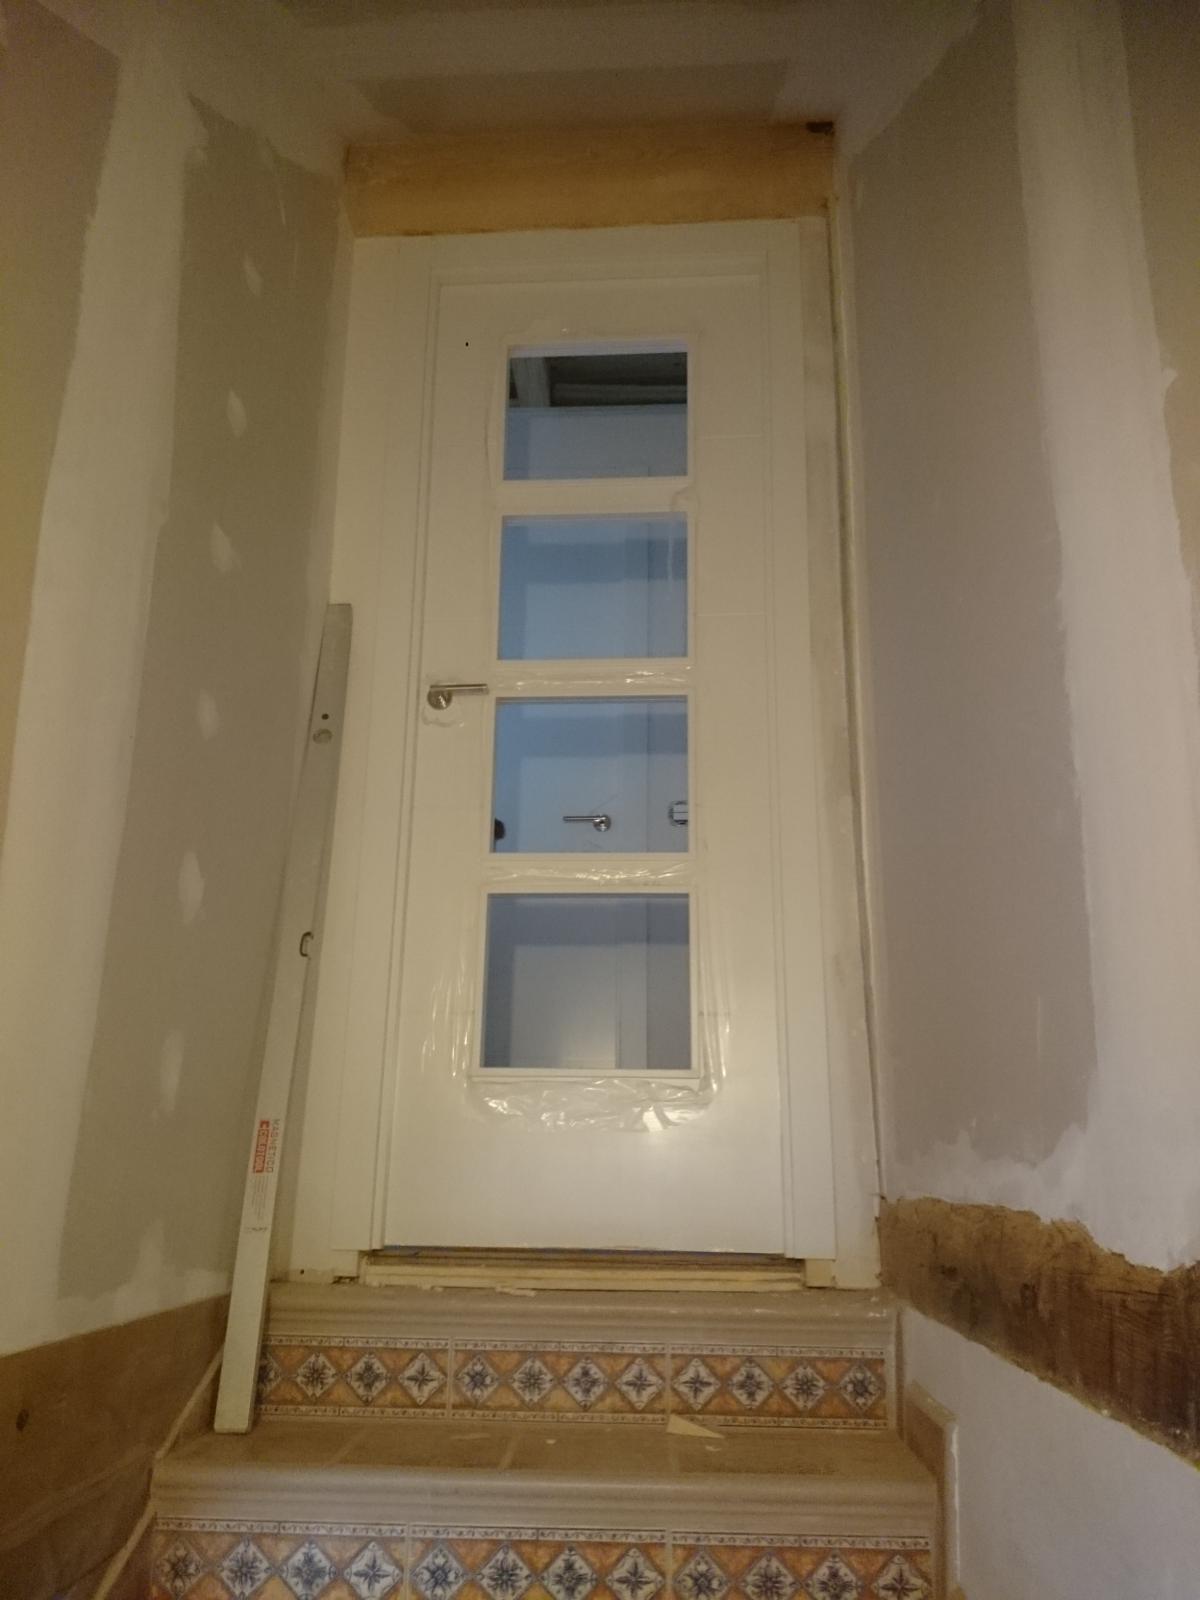 Construcciones Adrian: Escalera rustica y puerta lacada